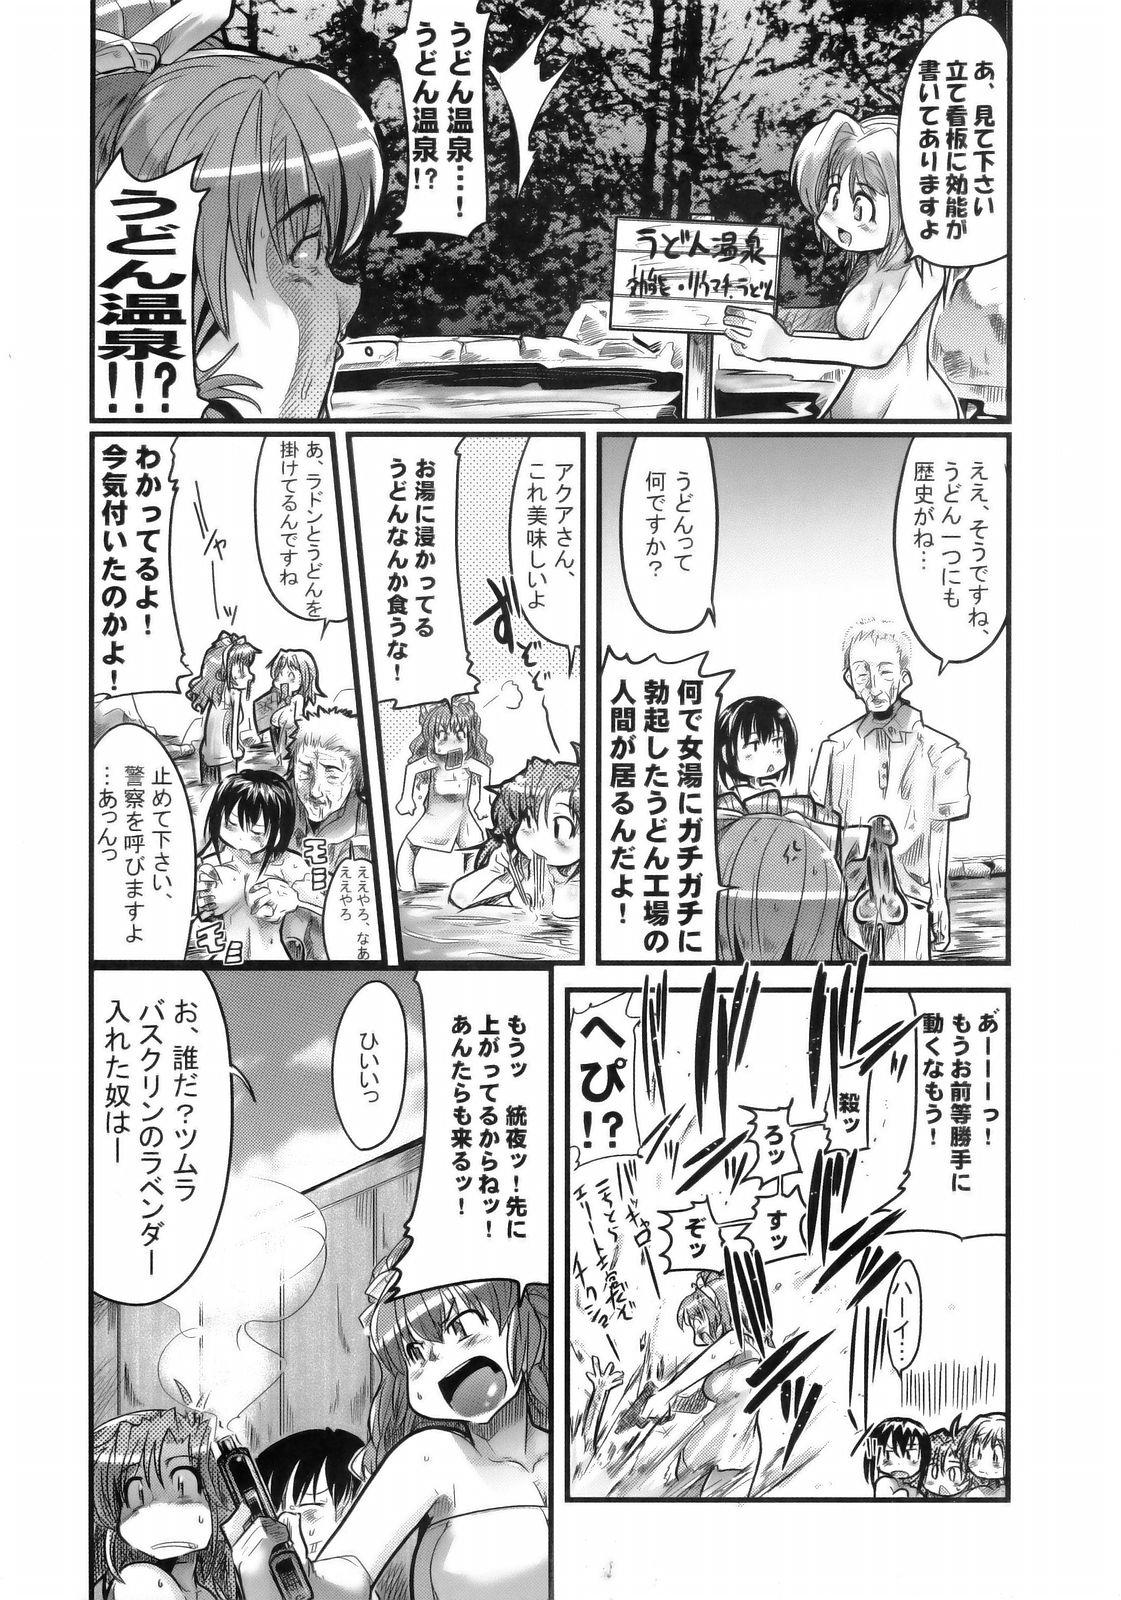 Bath Boku no Watashi no Super Bobobbo Taisen MGJOX - Super robot wars Cuck - Page 5